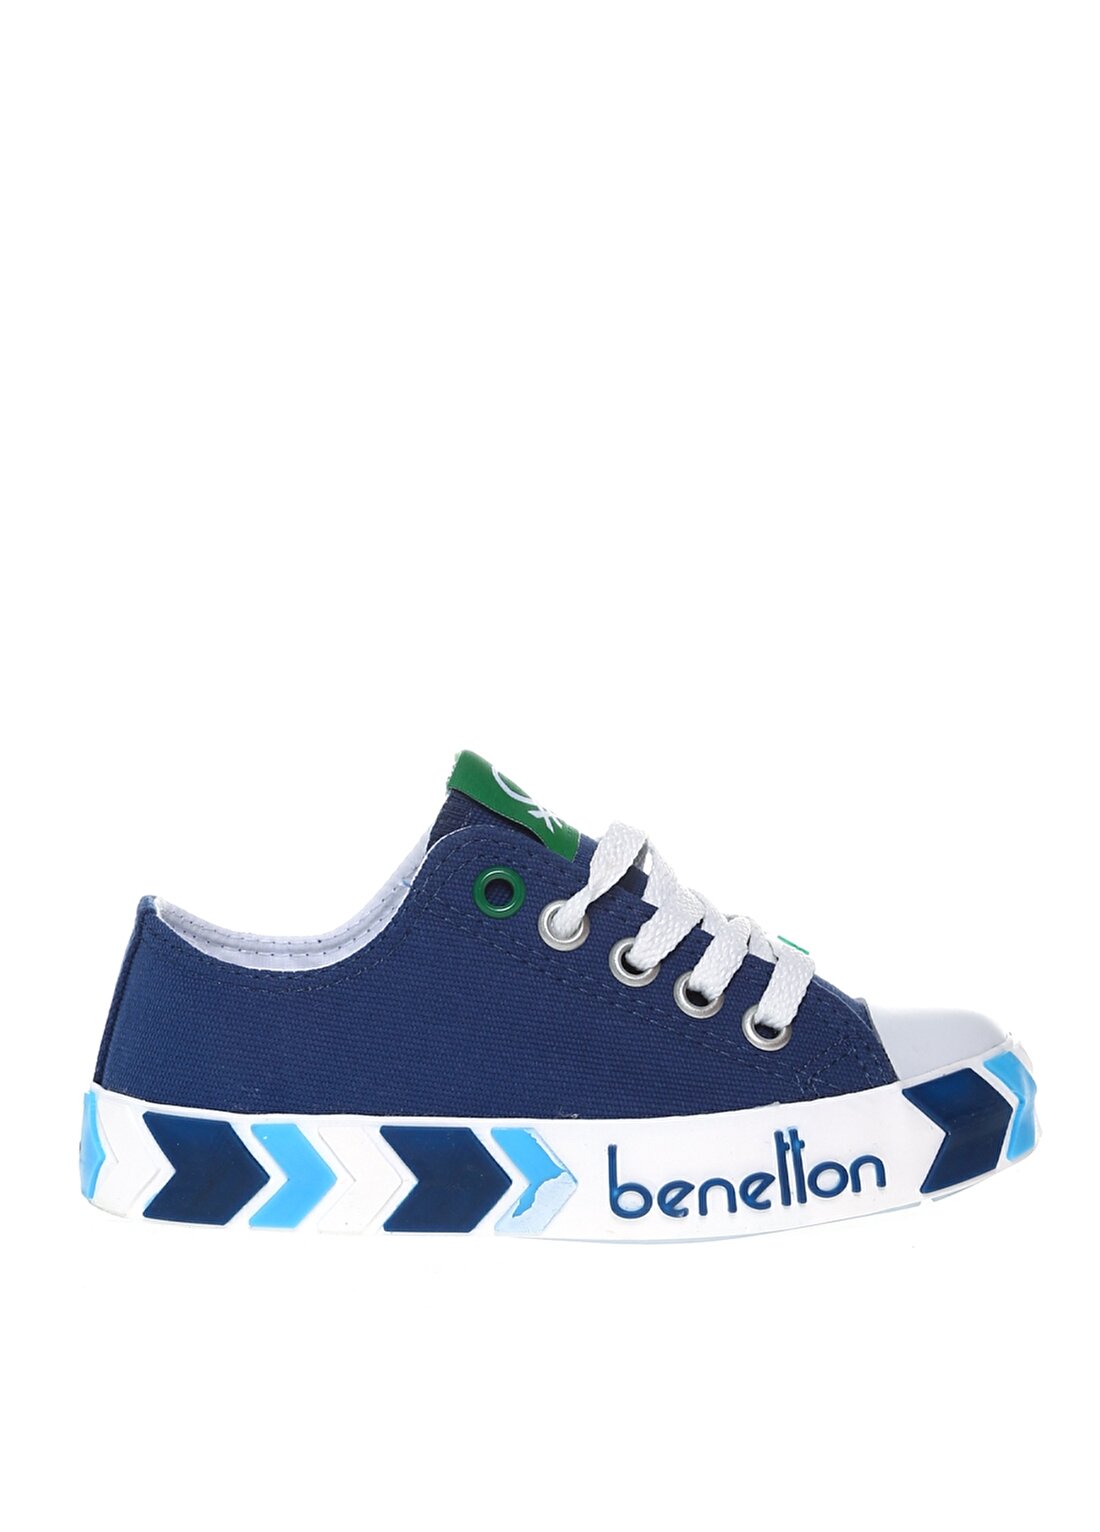 Benetton Lacivert Erkek Çocuk Keten Yürüyüş Ayakkabısı BN-30633 30